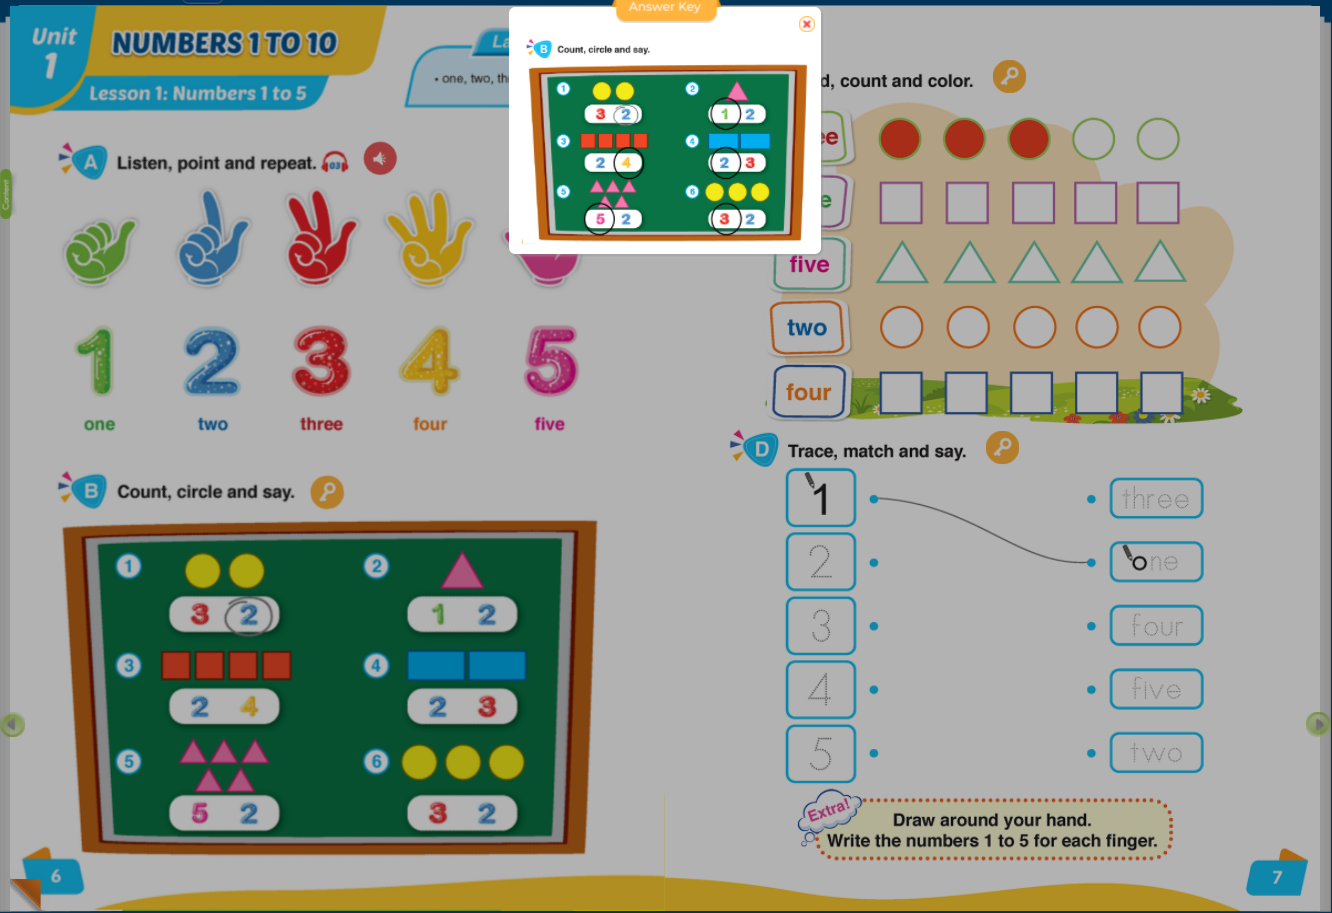 Hình ảnh [E-BOOK] i-Learn Smart Start English for Math 1 Sách mềm sách học sinh